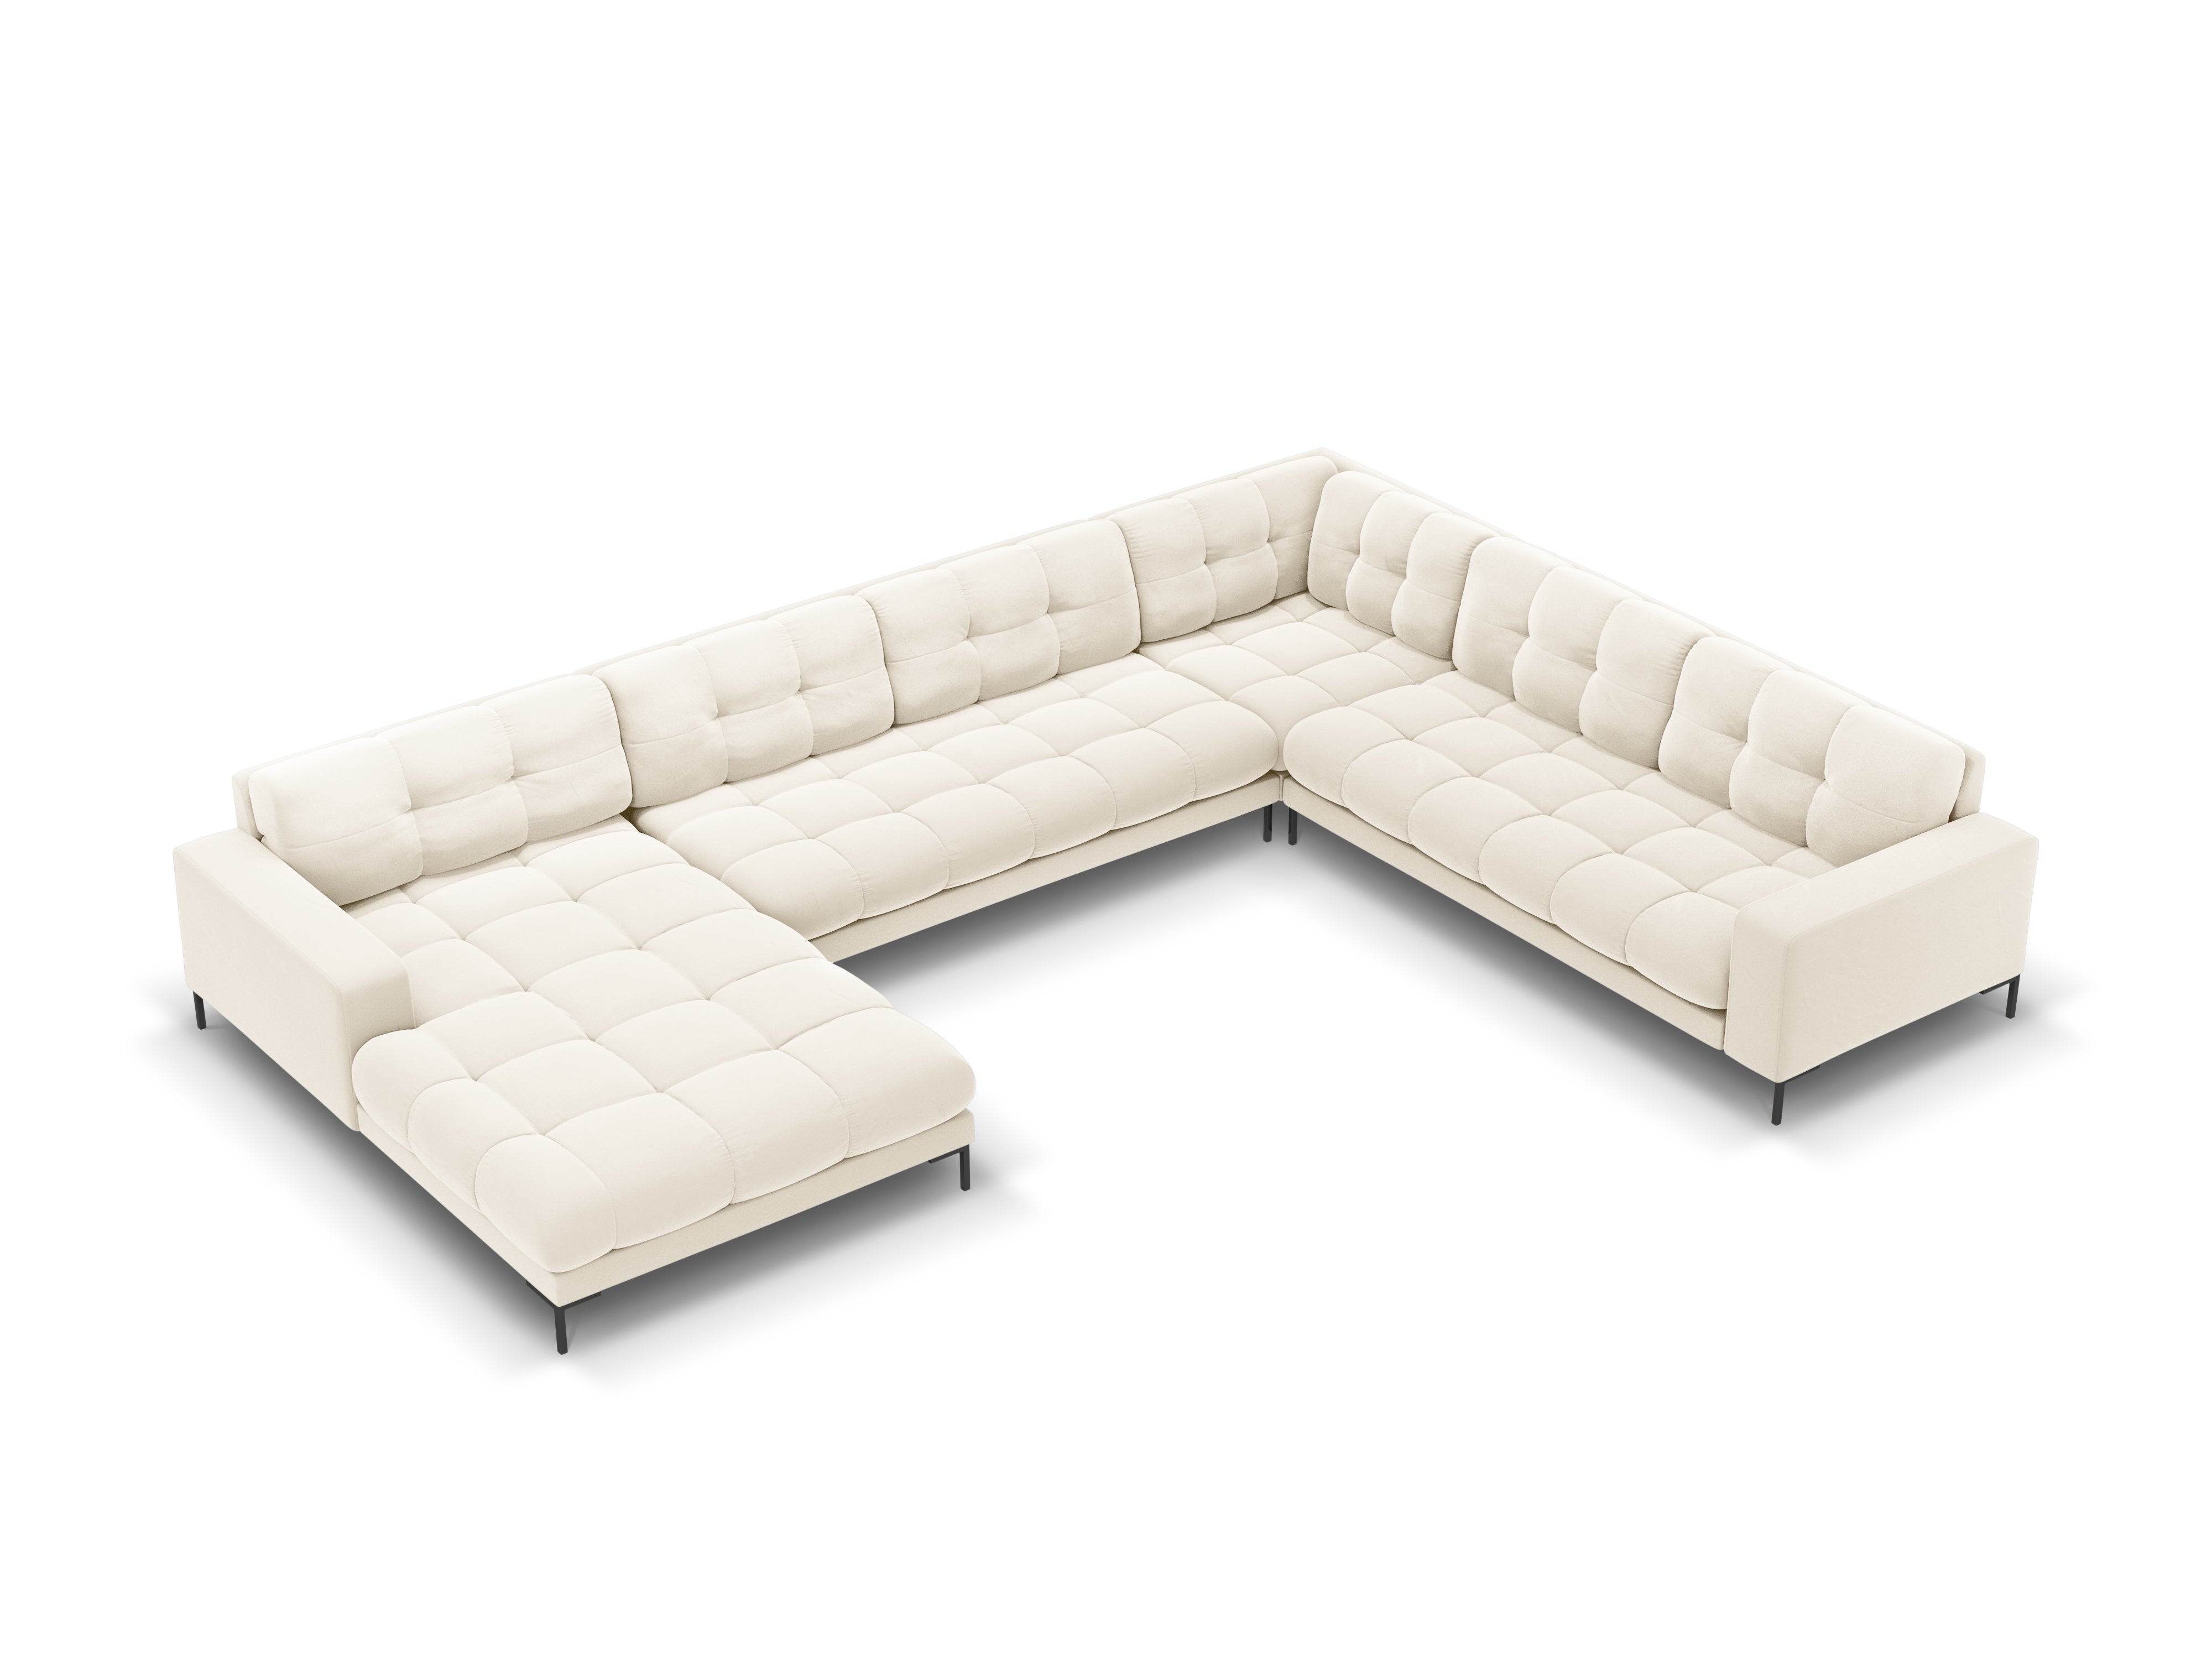 Panoramic velvet sofa right side 7 seater BALI light beige with black base